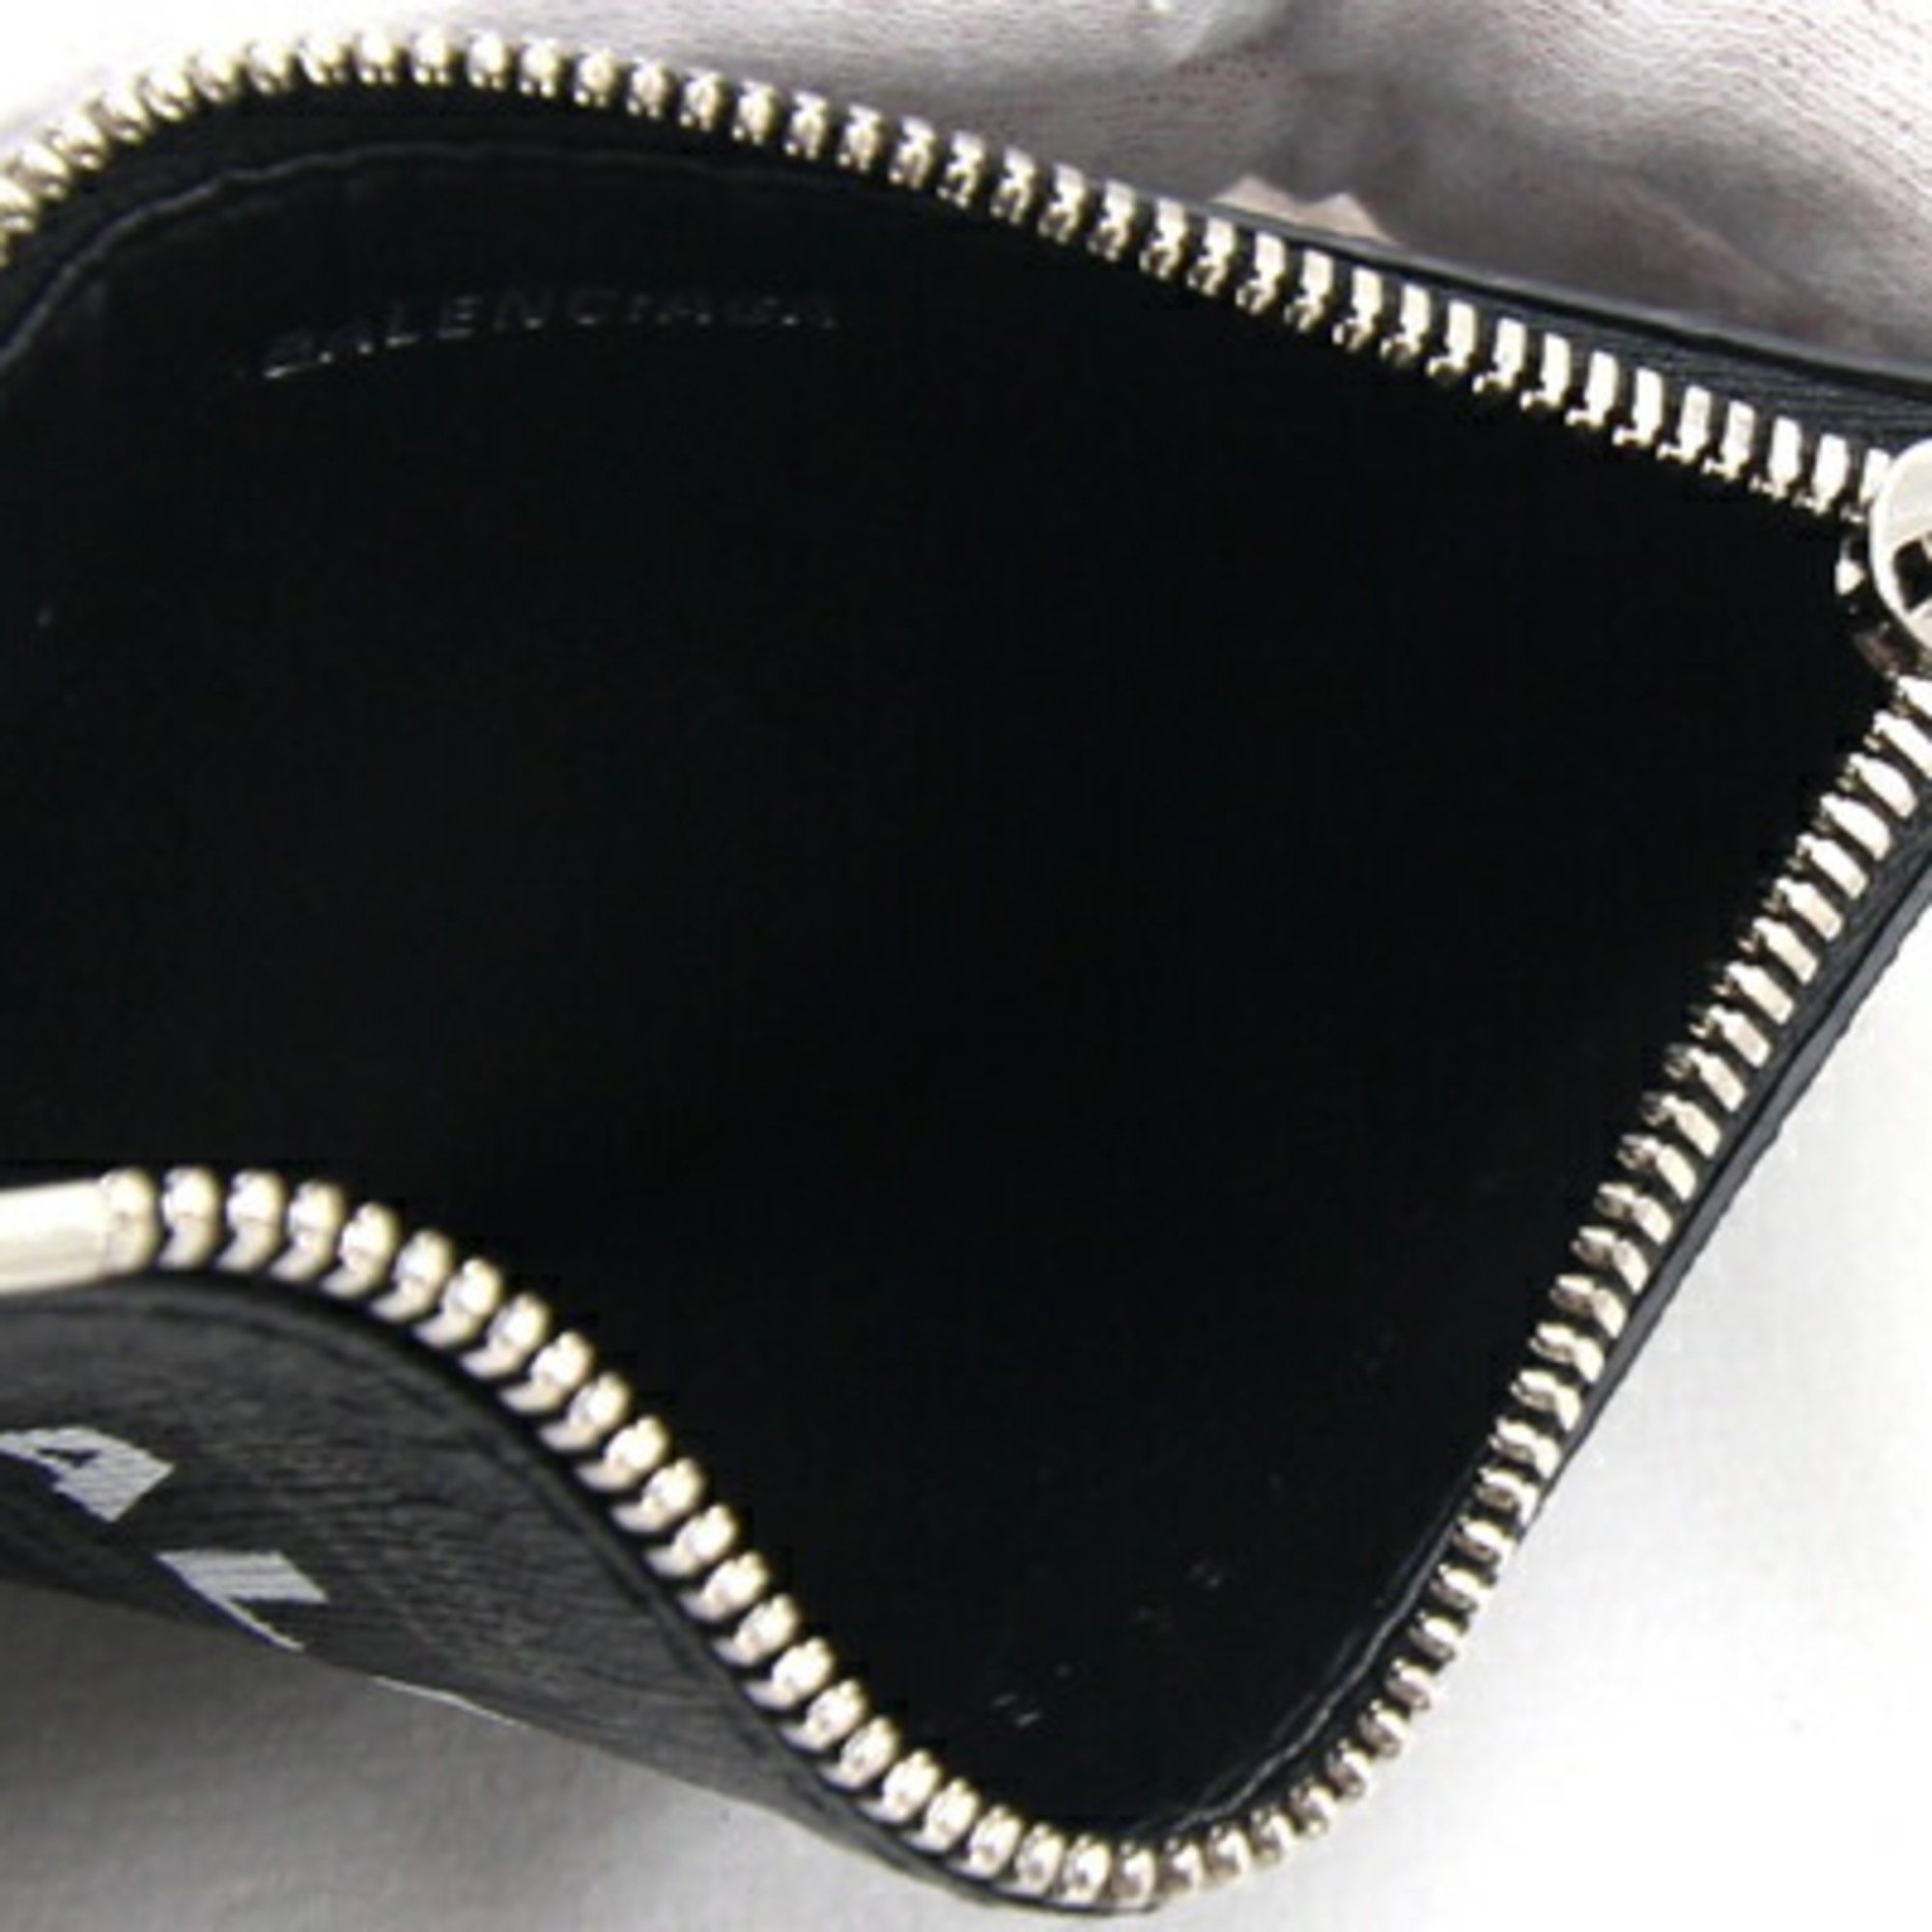 Balenciaga Card Key Ring 594548 Black Leather with Strap Fragment Case Men's Women's BALENCIAGA